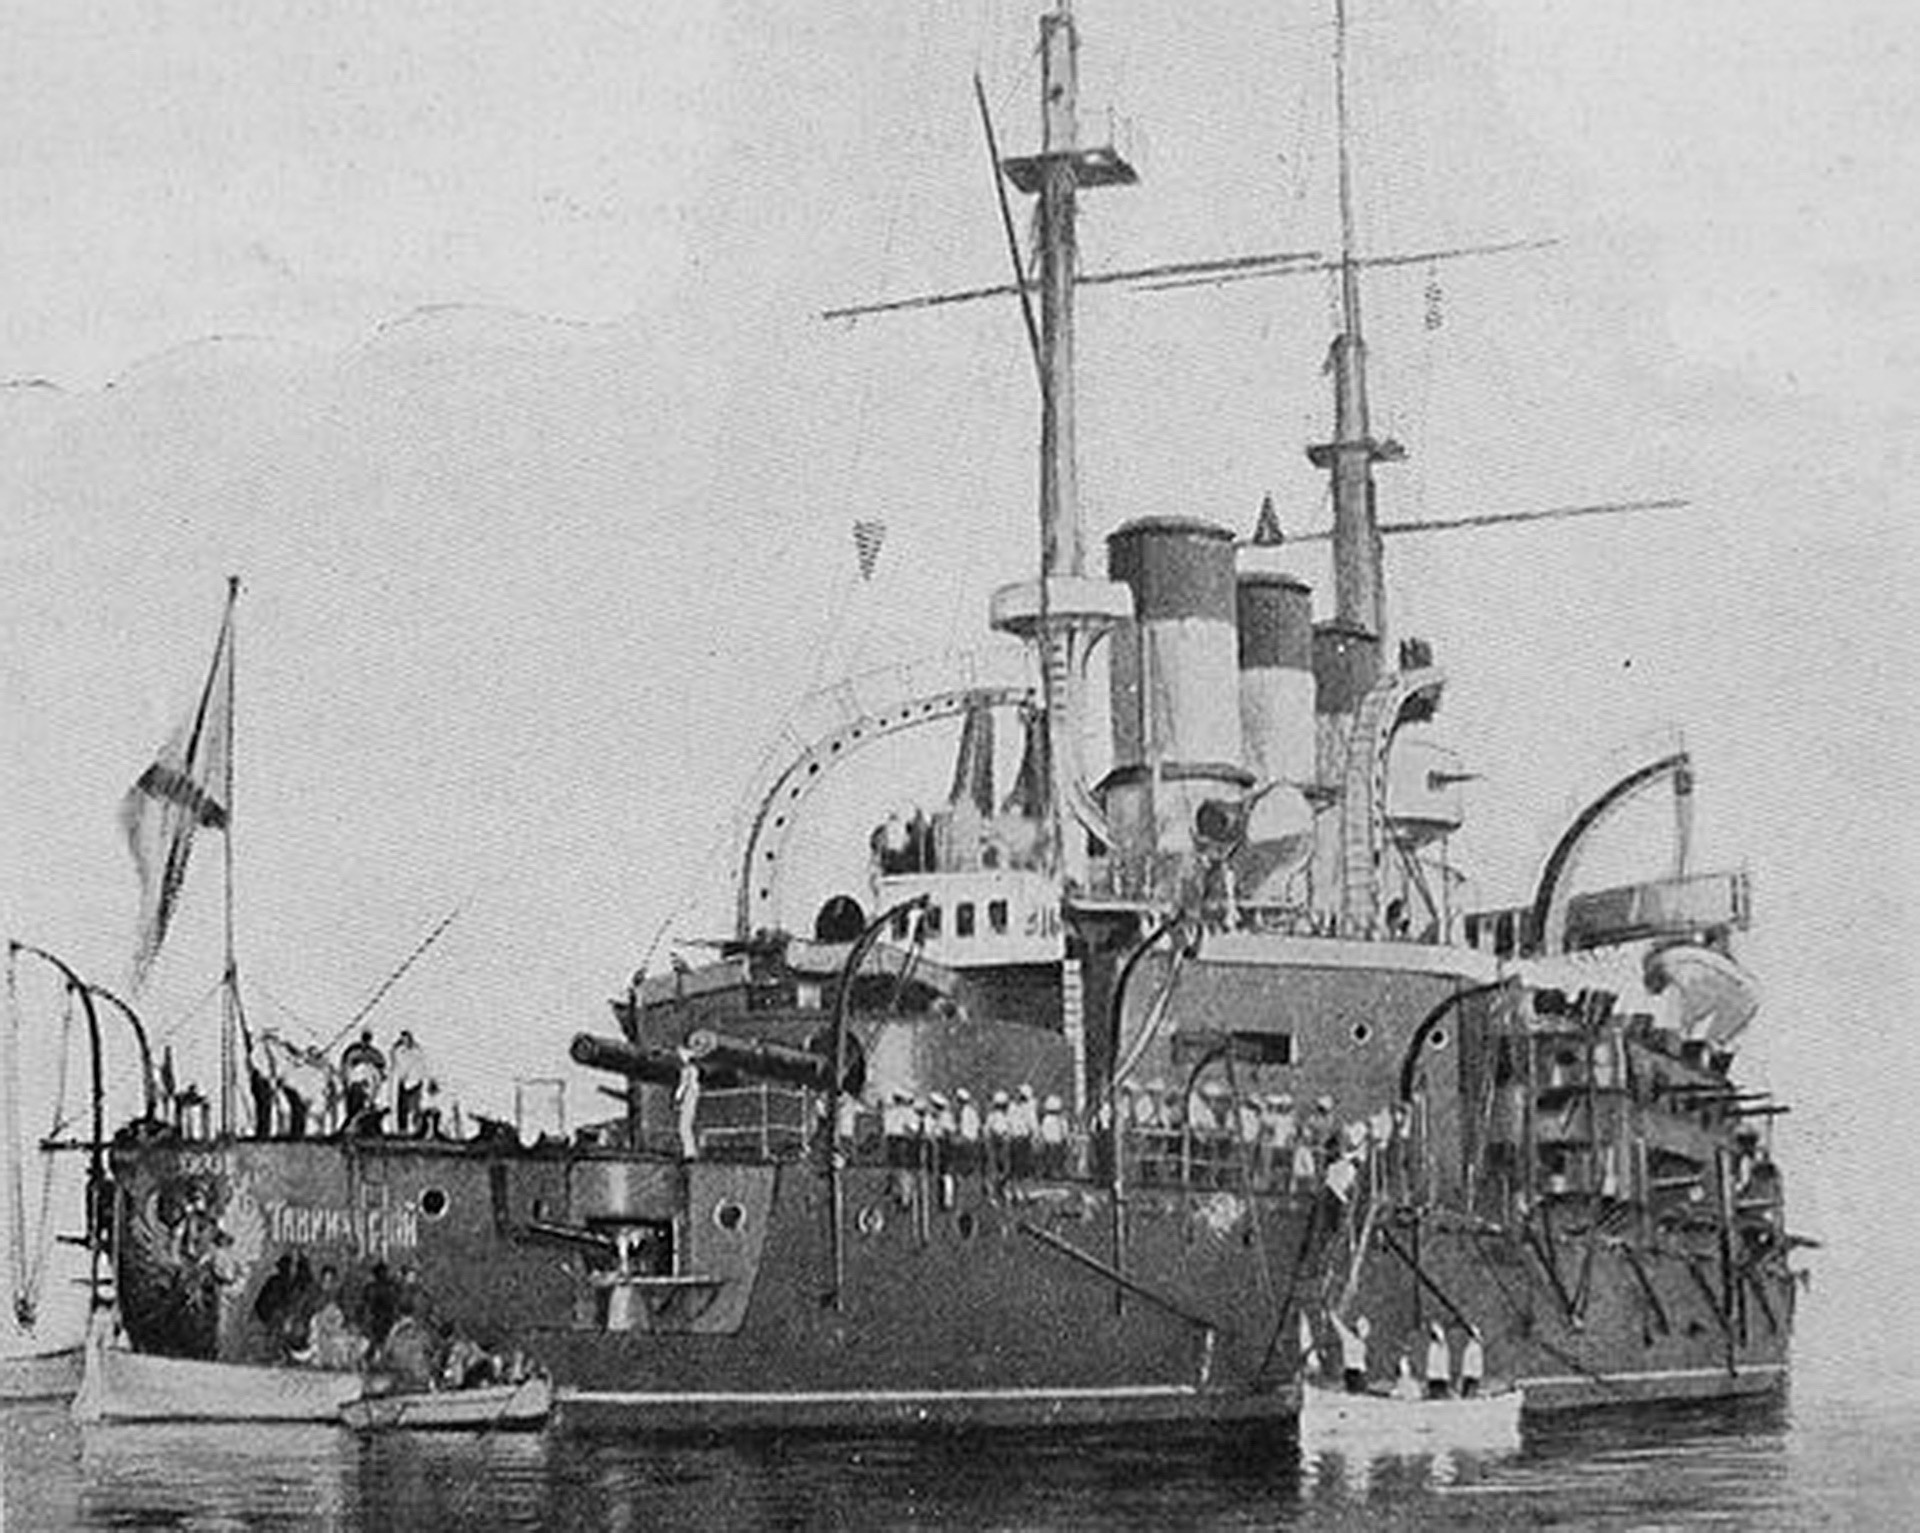 El acorazado Potemkin en el puerto de Constanza en julio de 1905. 

